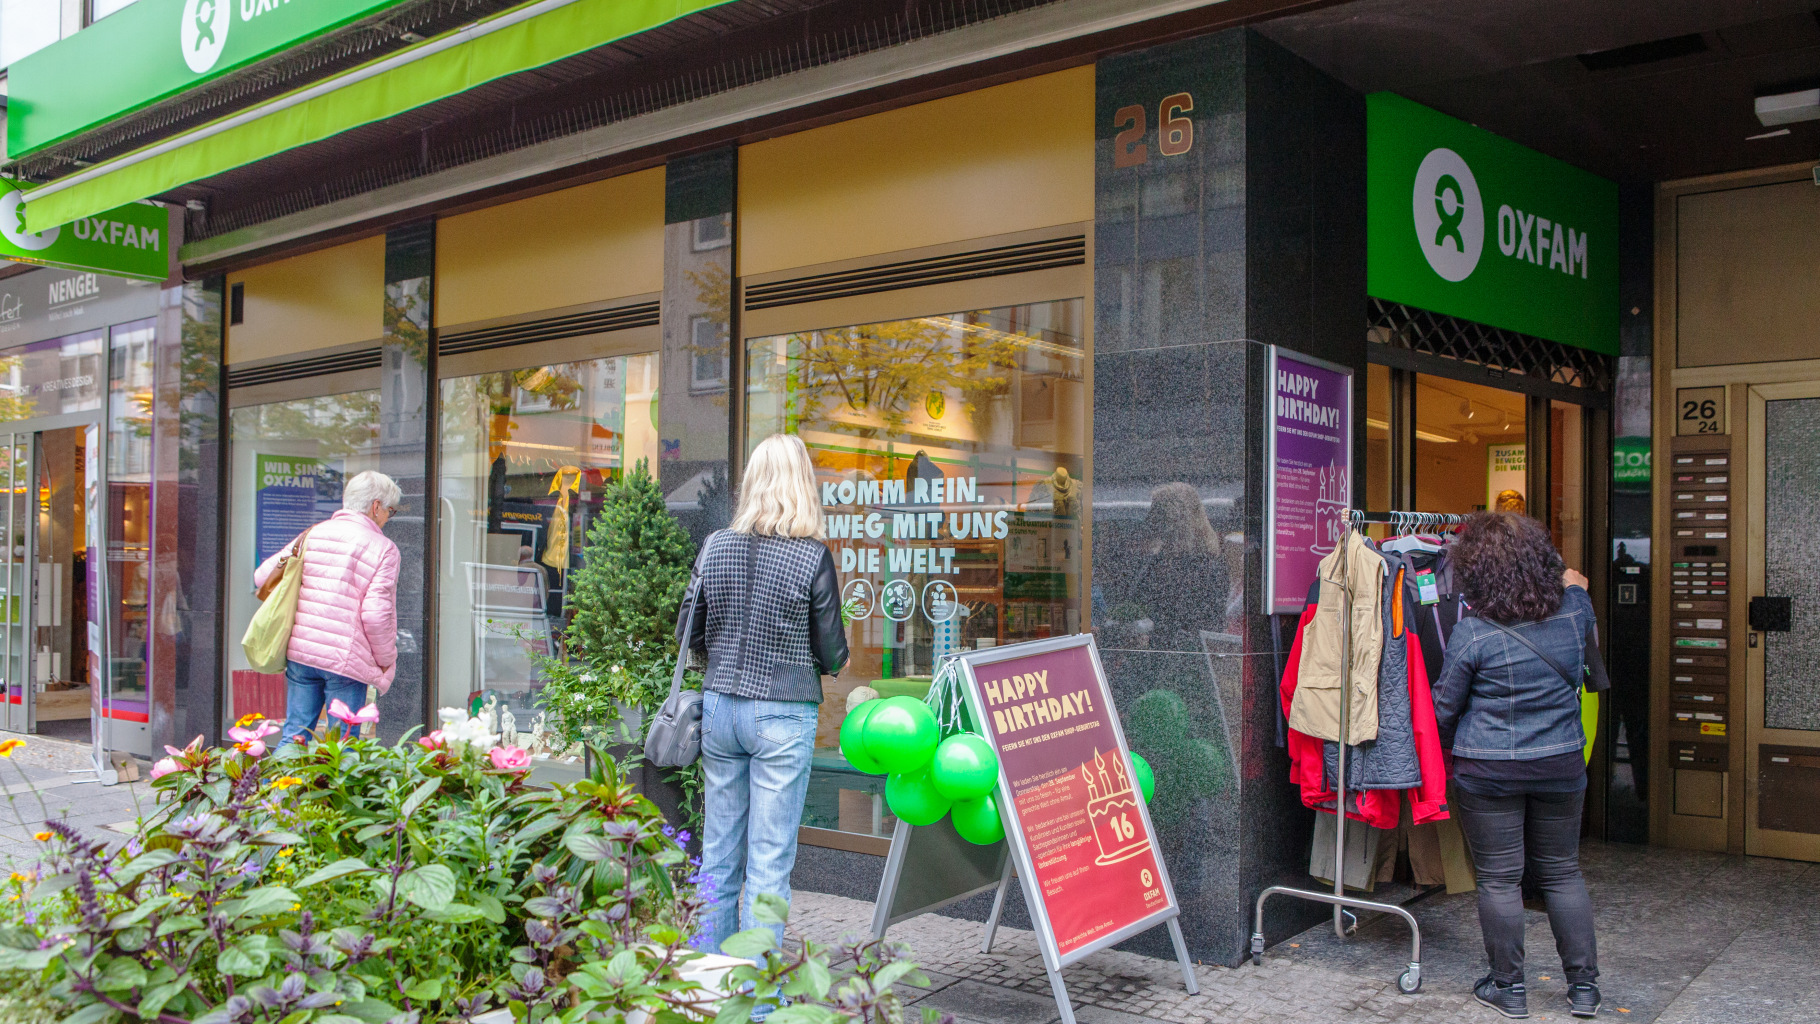 Oxfam Shop Koblenz - Außenansicht